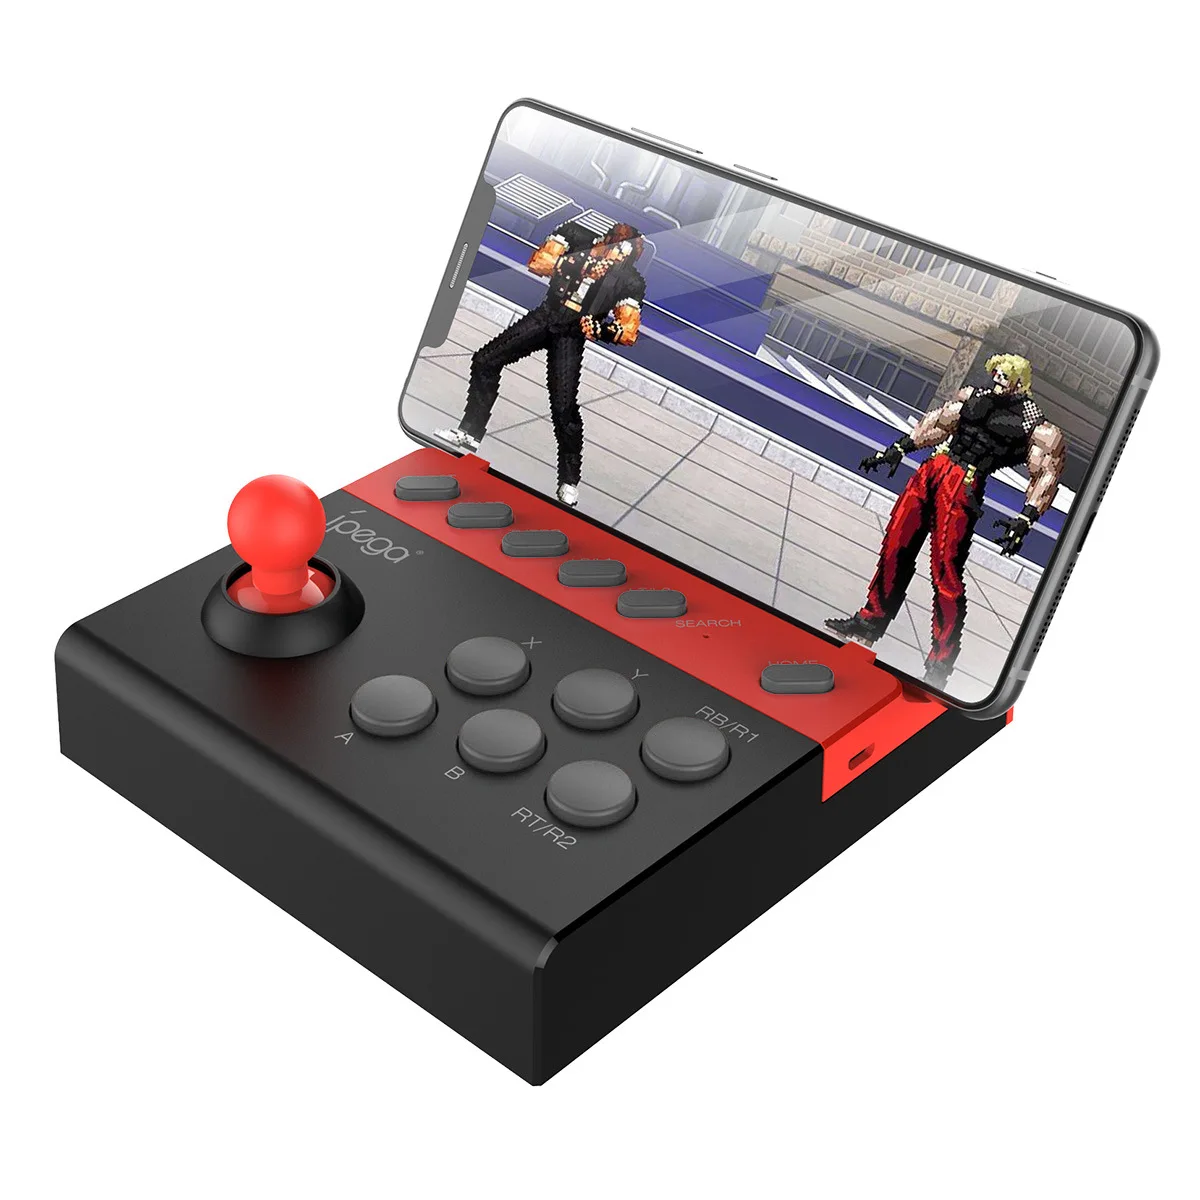 

2019 Ipega Pg-9135 Bluetooth геймпад, беспроводной игровой контроллер для Android/Ios, планшетов, аналоговых файтингов Ipega